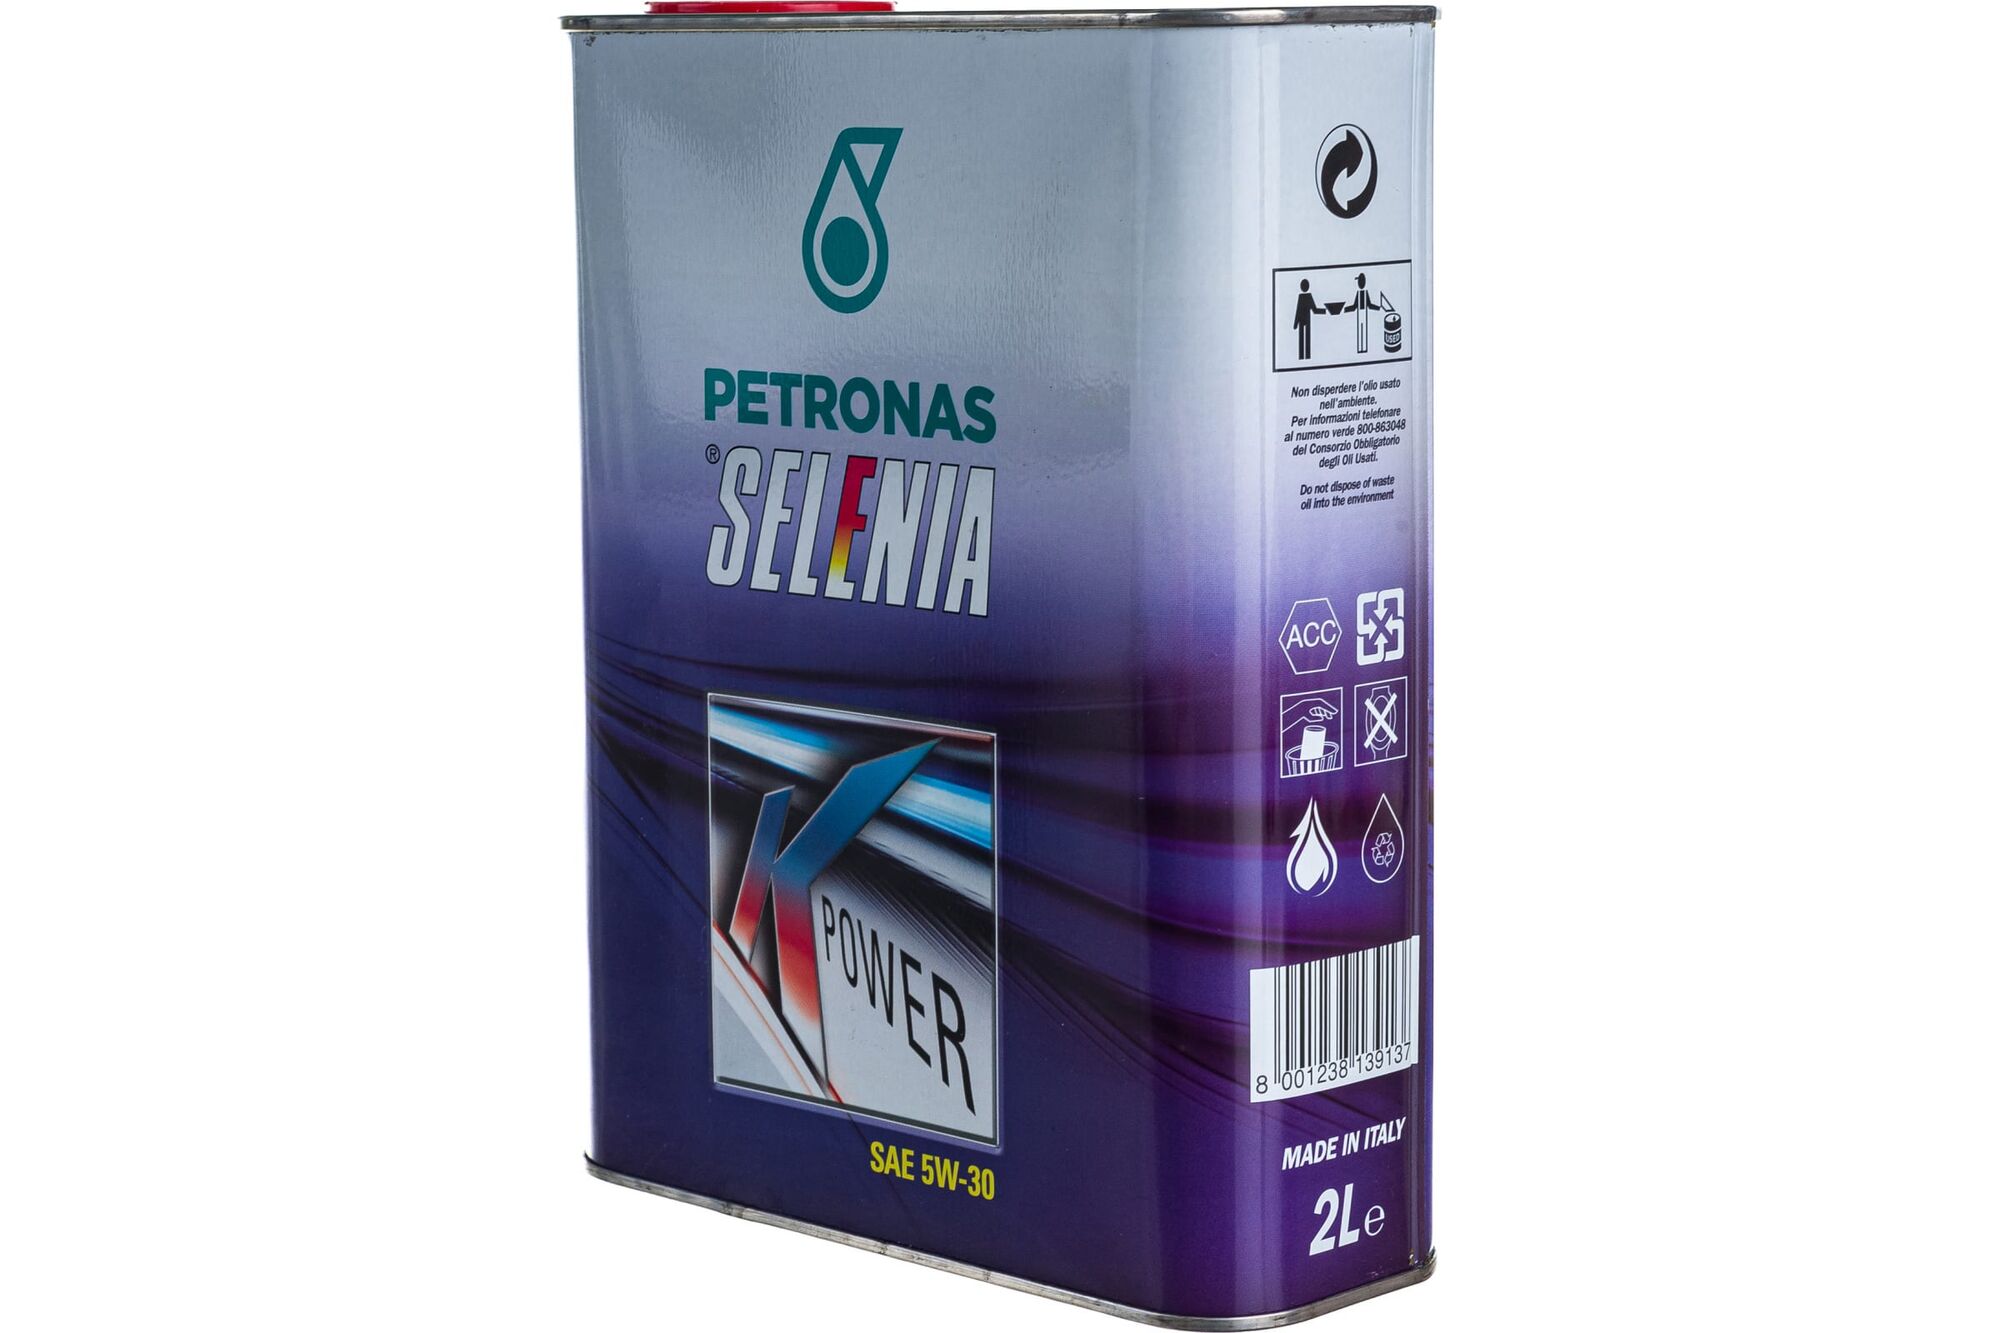 Моторное масло PETRONAS SELENIA К POWER синтетическое, 5W30, 2 л 70025GC5EU Petronas 1